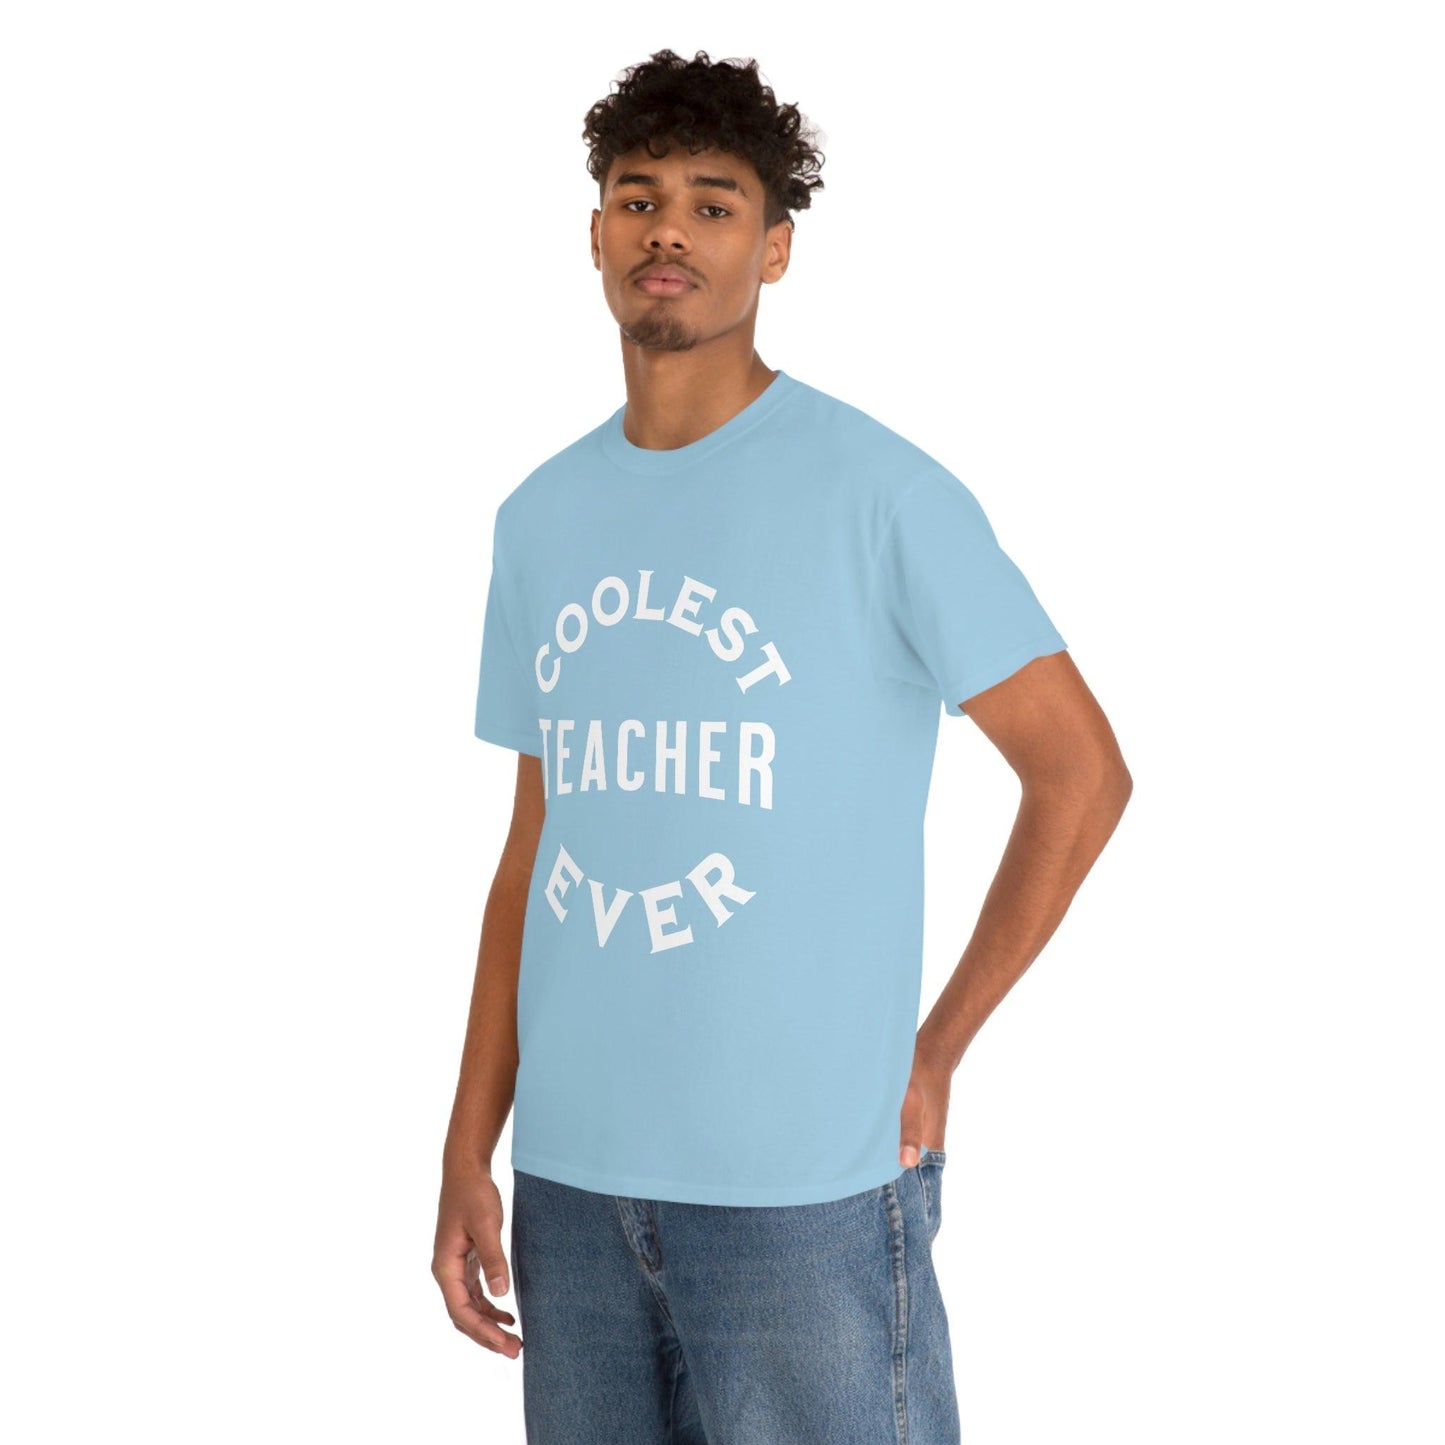 Coolest Teacher Ever Tee - cute teacher shirt - gift for teacher - Giftsmojo